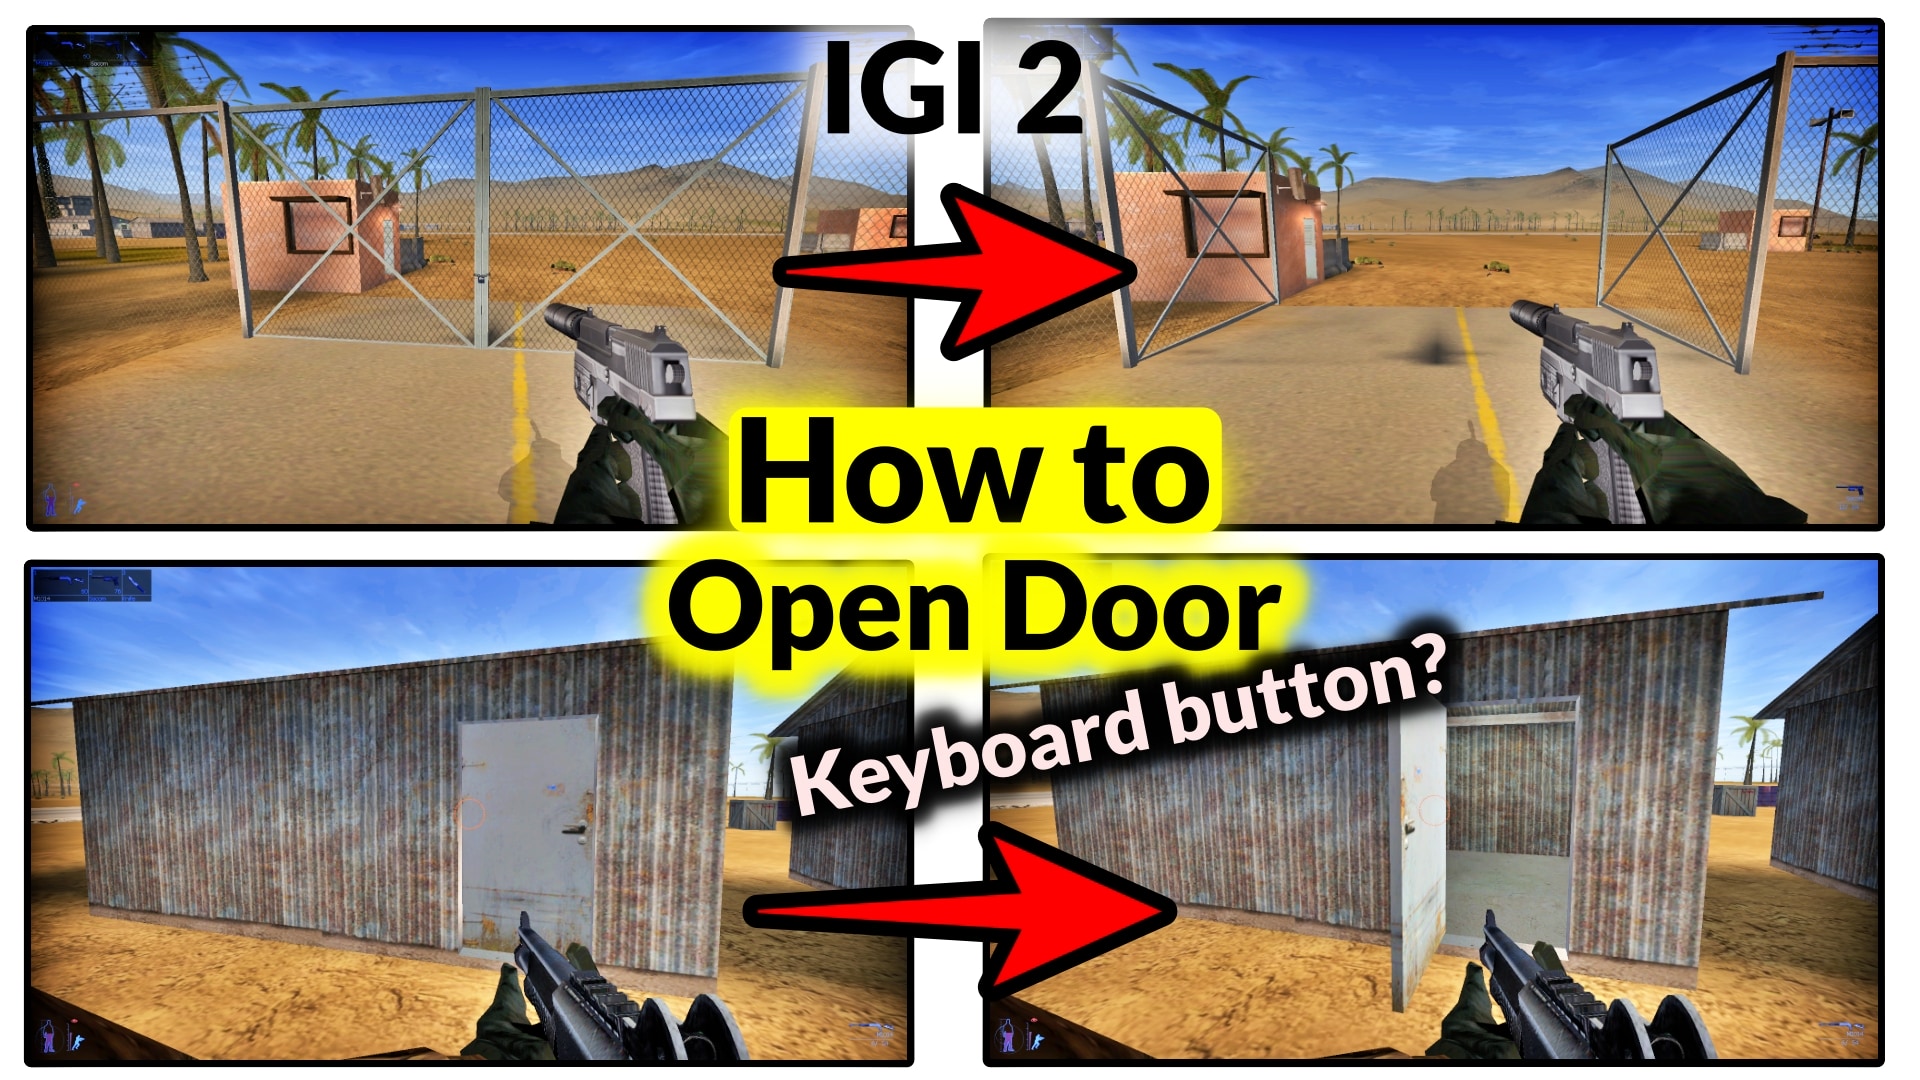 how to open door in IGI 2